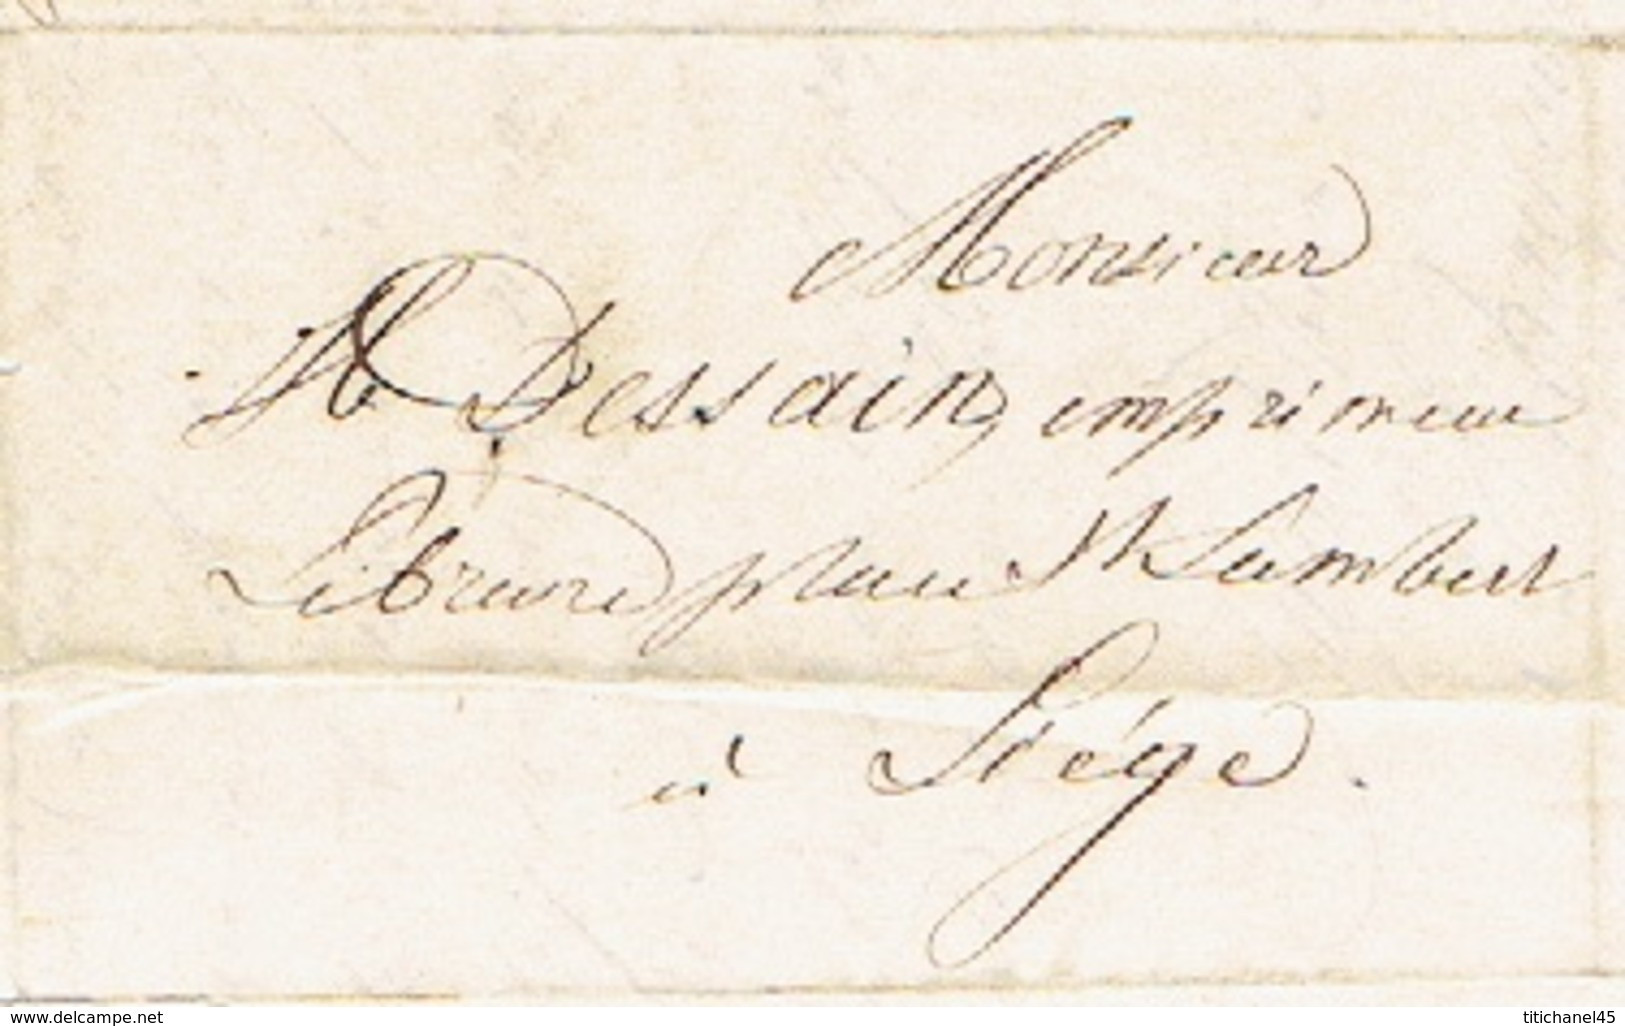 Précurseur 28/12/1847 Lettre Par Le Messager MASSET De HERVE à LIEGE - Signé BAYAUX-PARIS Imprimeur-libraire - 1830-1849 (Onafhankelijk België)